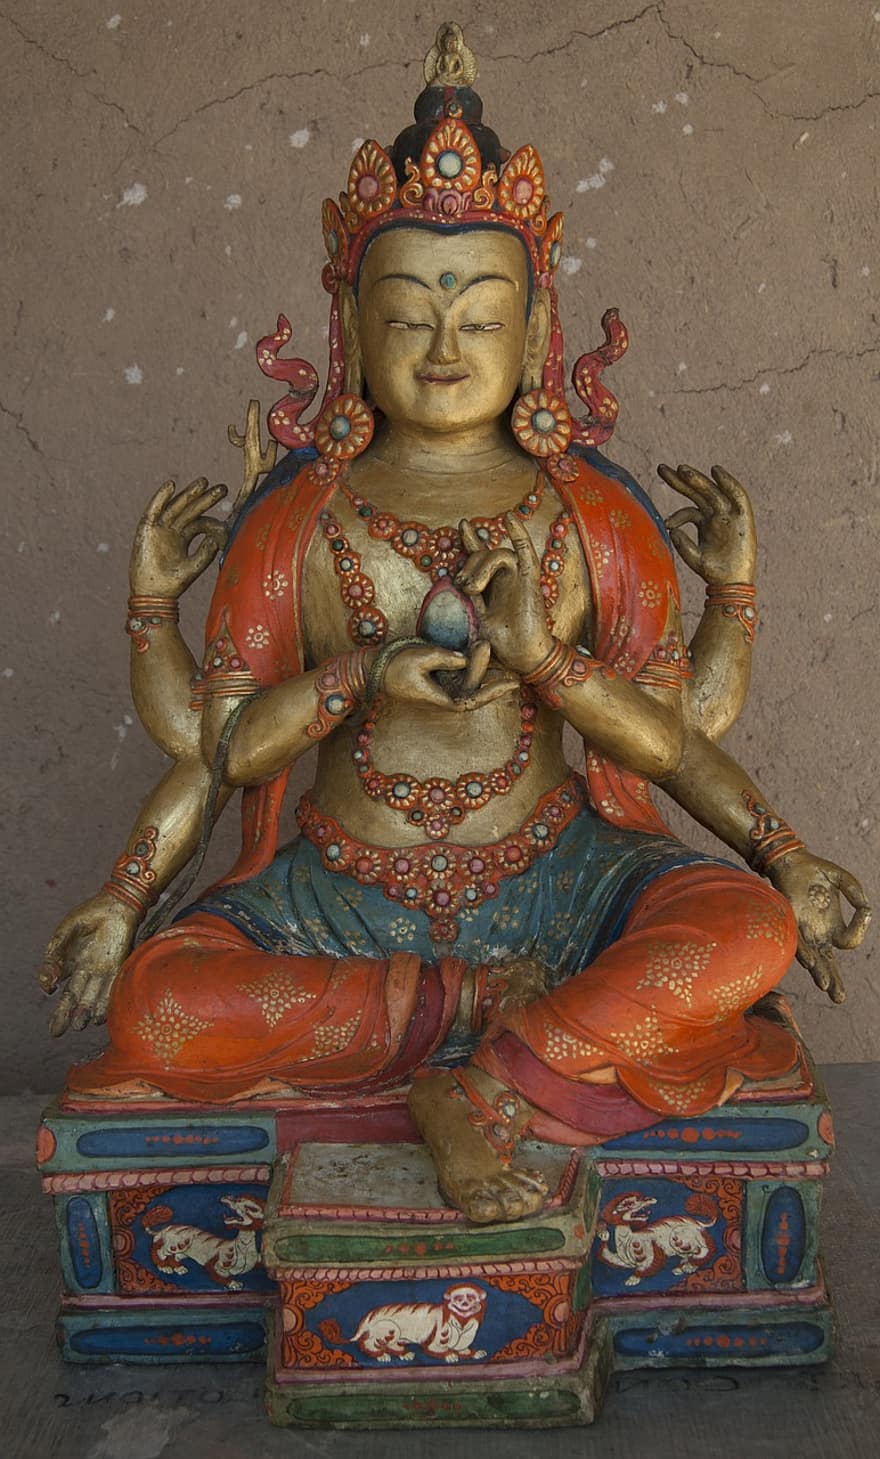 Budist Boyama, Budizm, budist sanatı, heykel, din, kültürler, tinsellik, Hinduizm, Allah, ünlü mekan, Hint kültürü